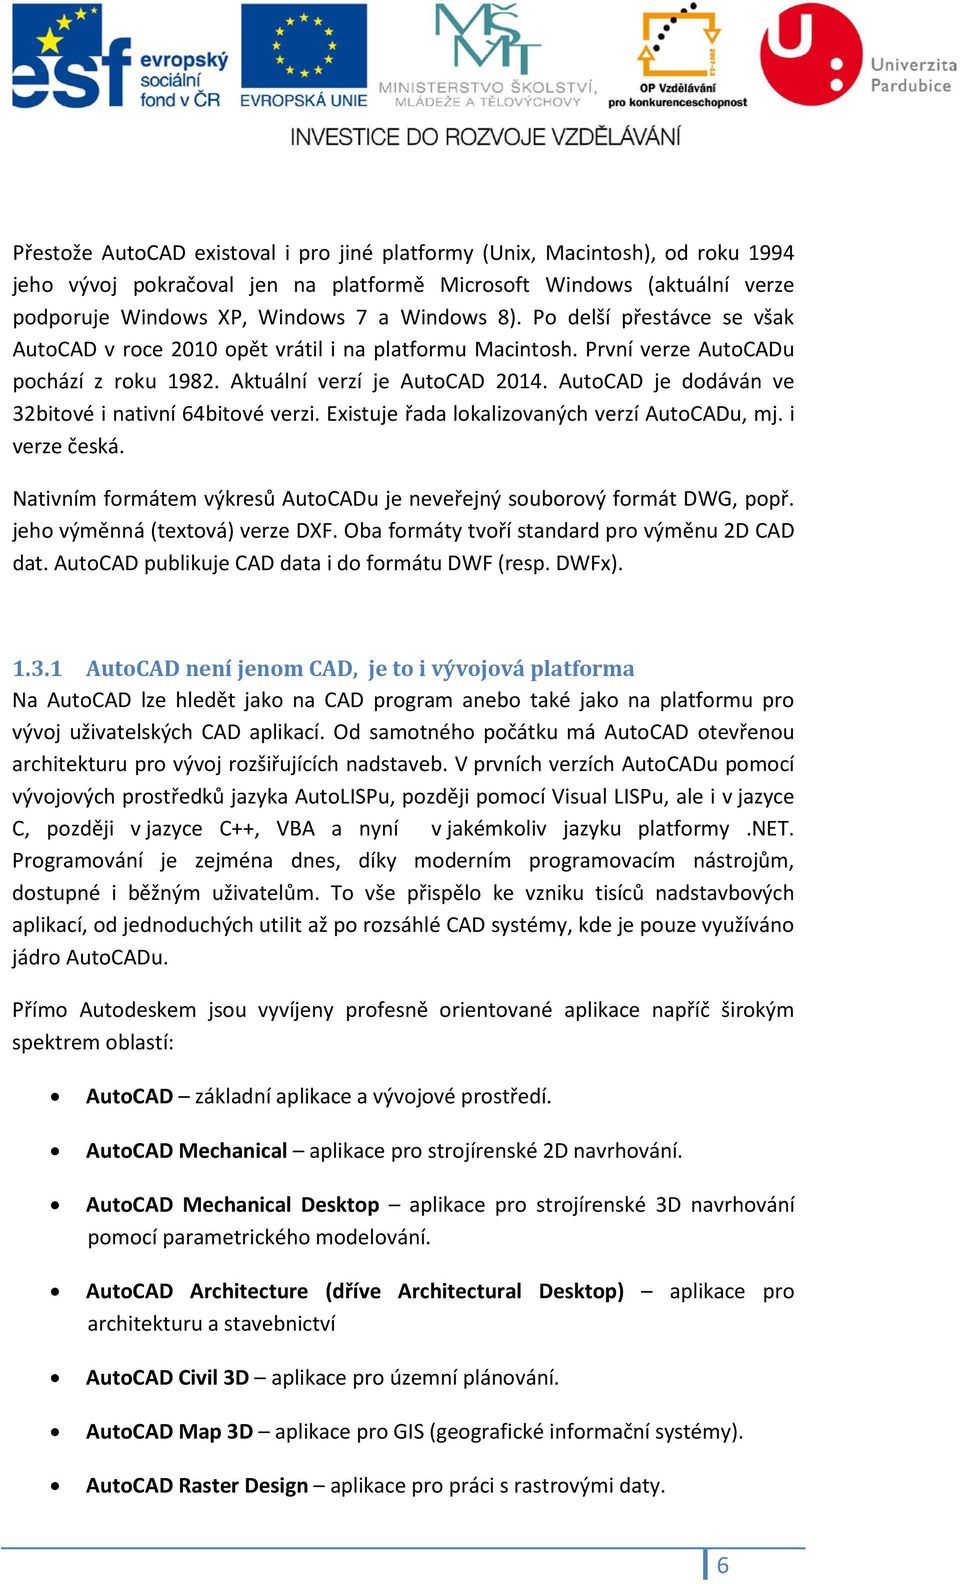 AutoCAD je dodáván ve 32bitové i nativní 64bitové verzi. Existuje řada lokalizovaných verzí AutoCADu, mj. i verze česká. Nativním formátem výkresů AutoCADu je neveřejný souborový formát DWG, popř.